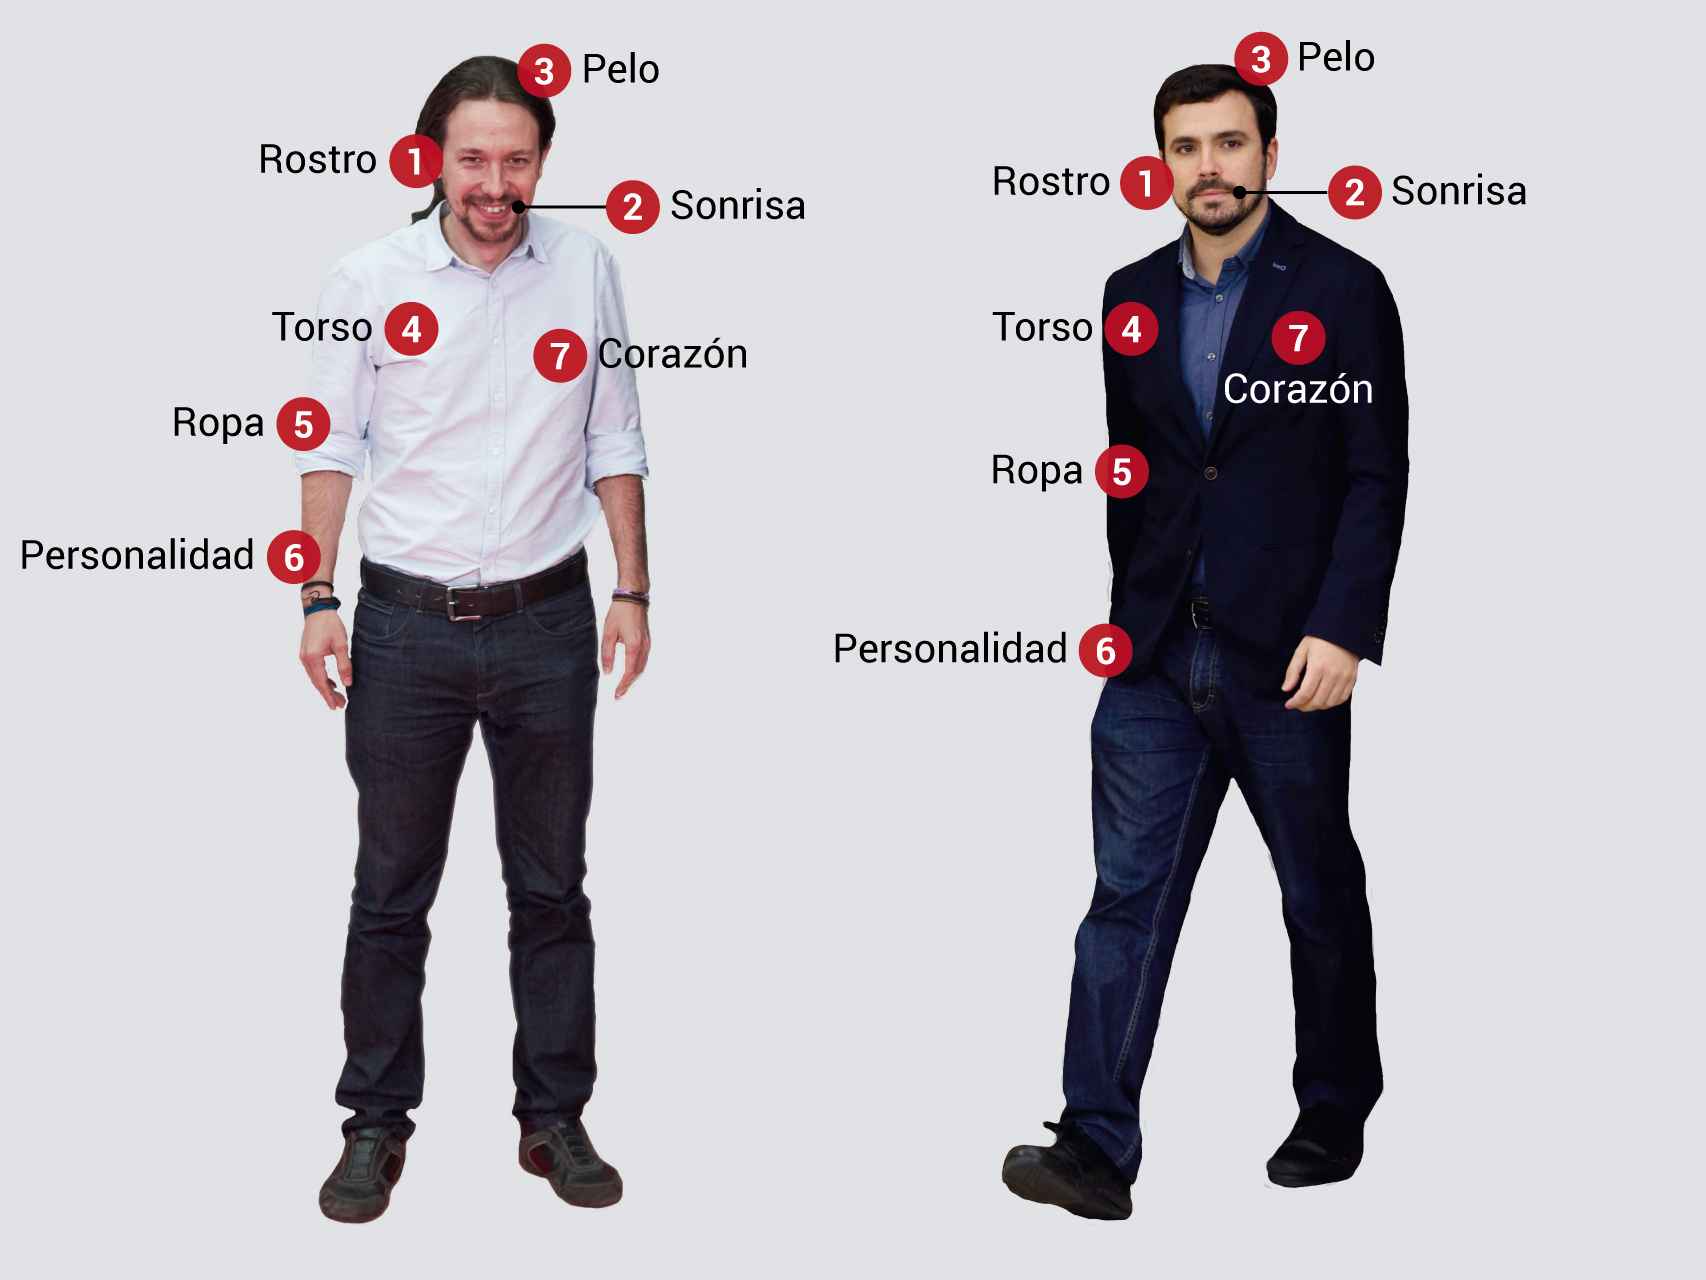 Encuentre las siete diferencias entre Pablo Iglesias y Alberto Garzón